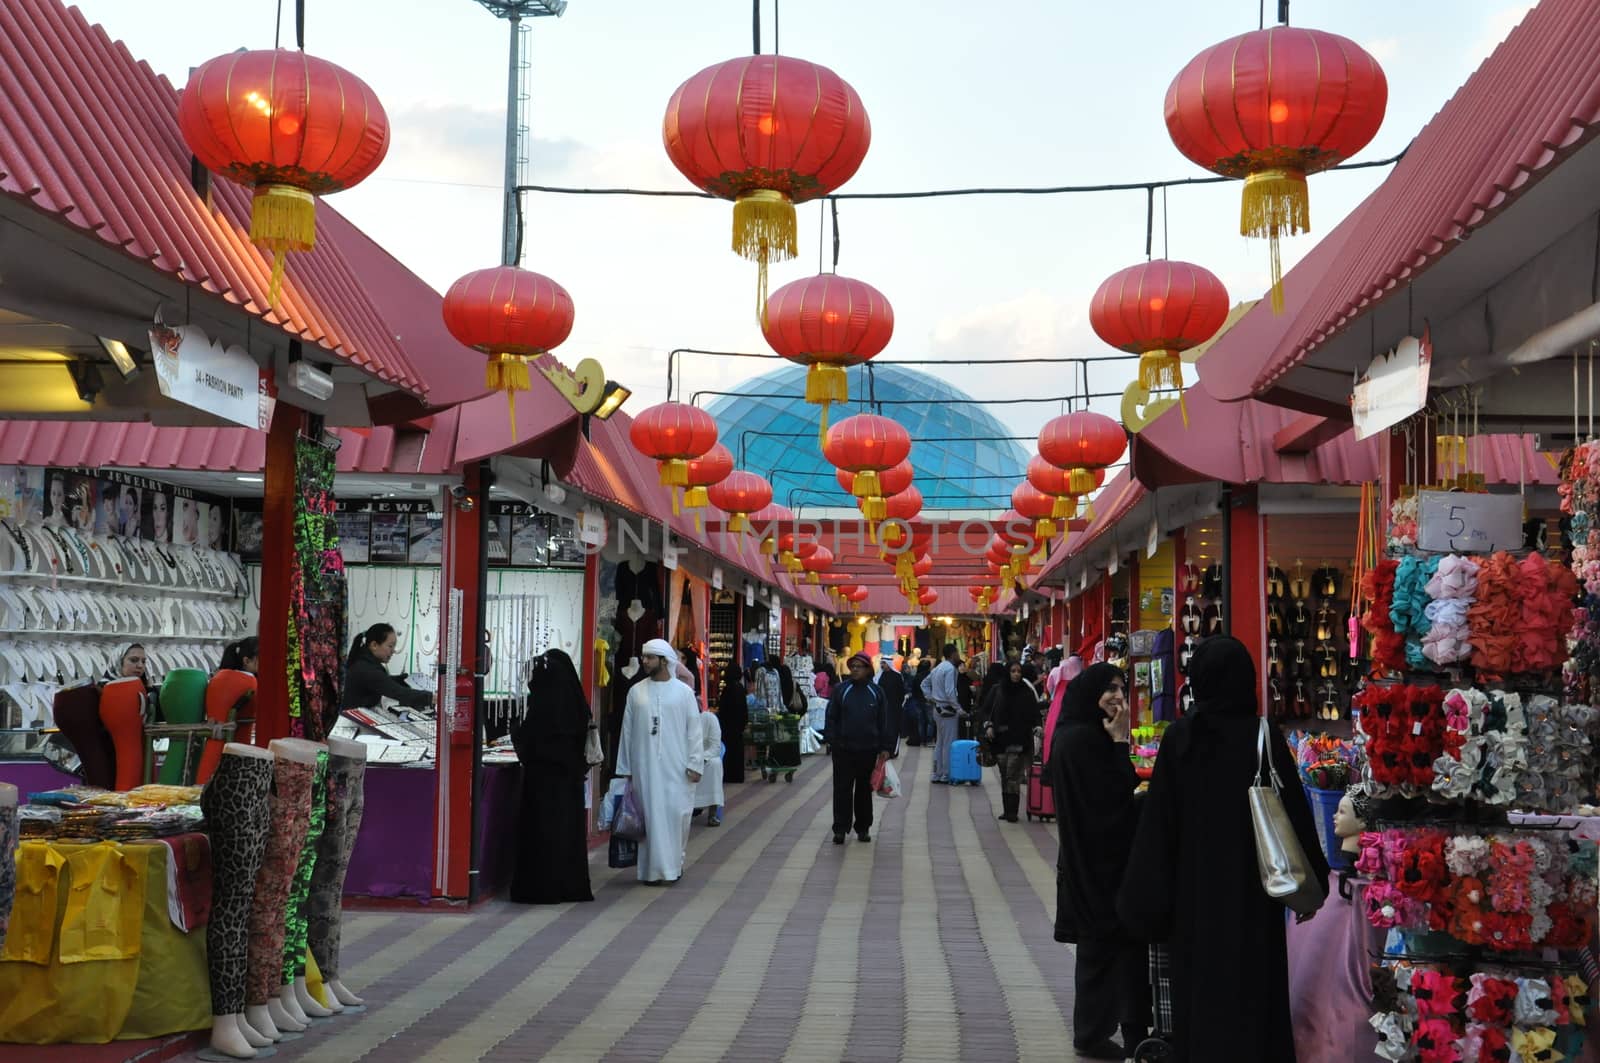 China pavilion at Global Village in Dubai, UAE by sainaniritu